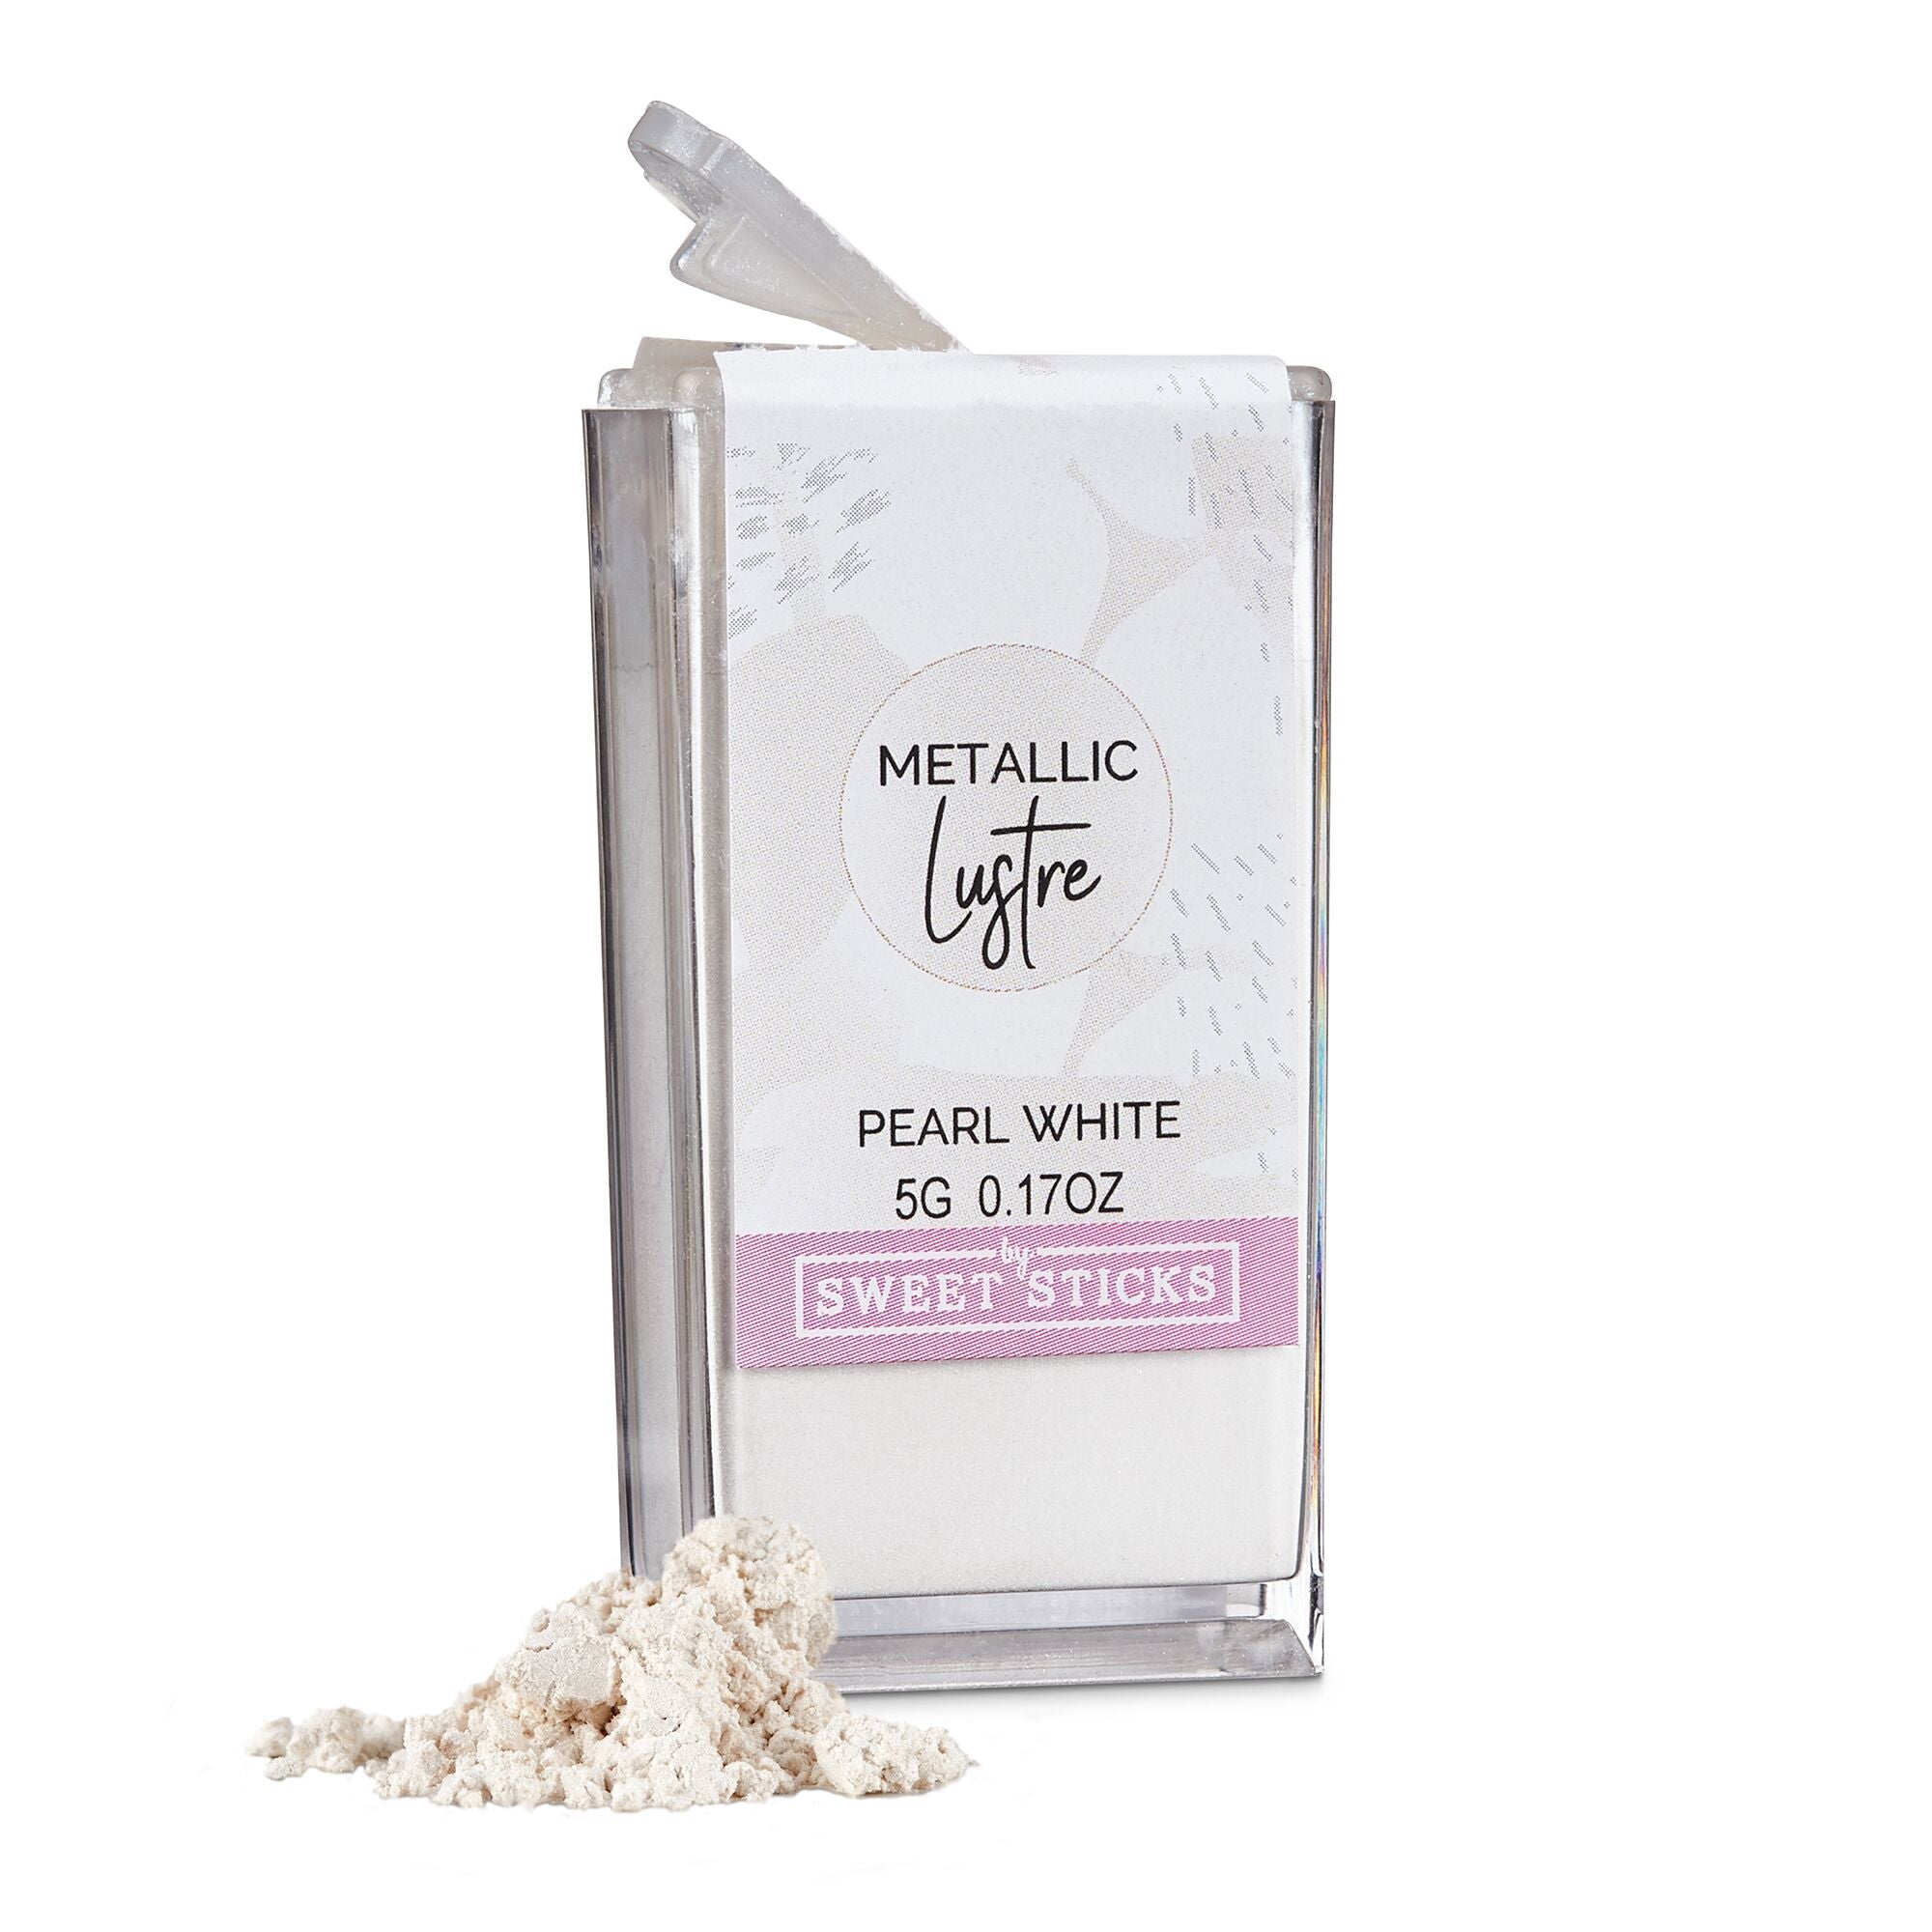 SWEETSTICKS 100% Edible Metallic Lustre Dust - 5g - Pearl White